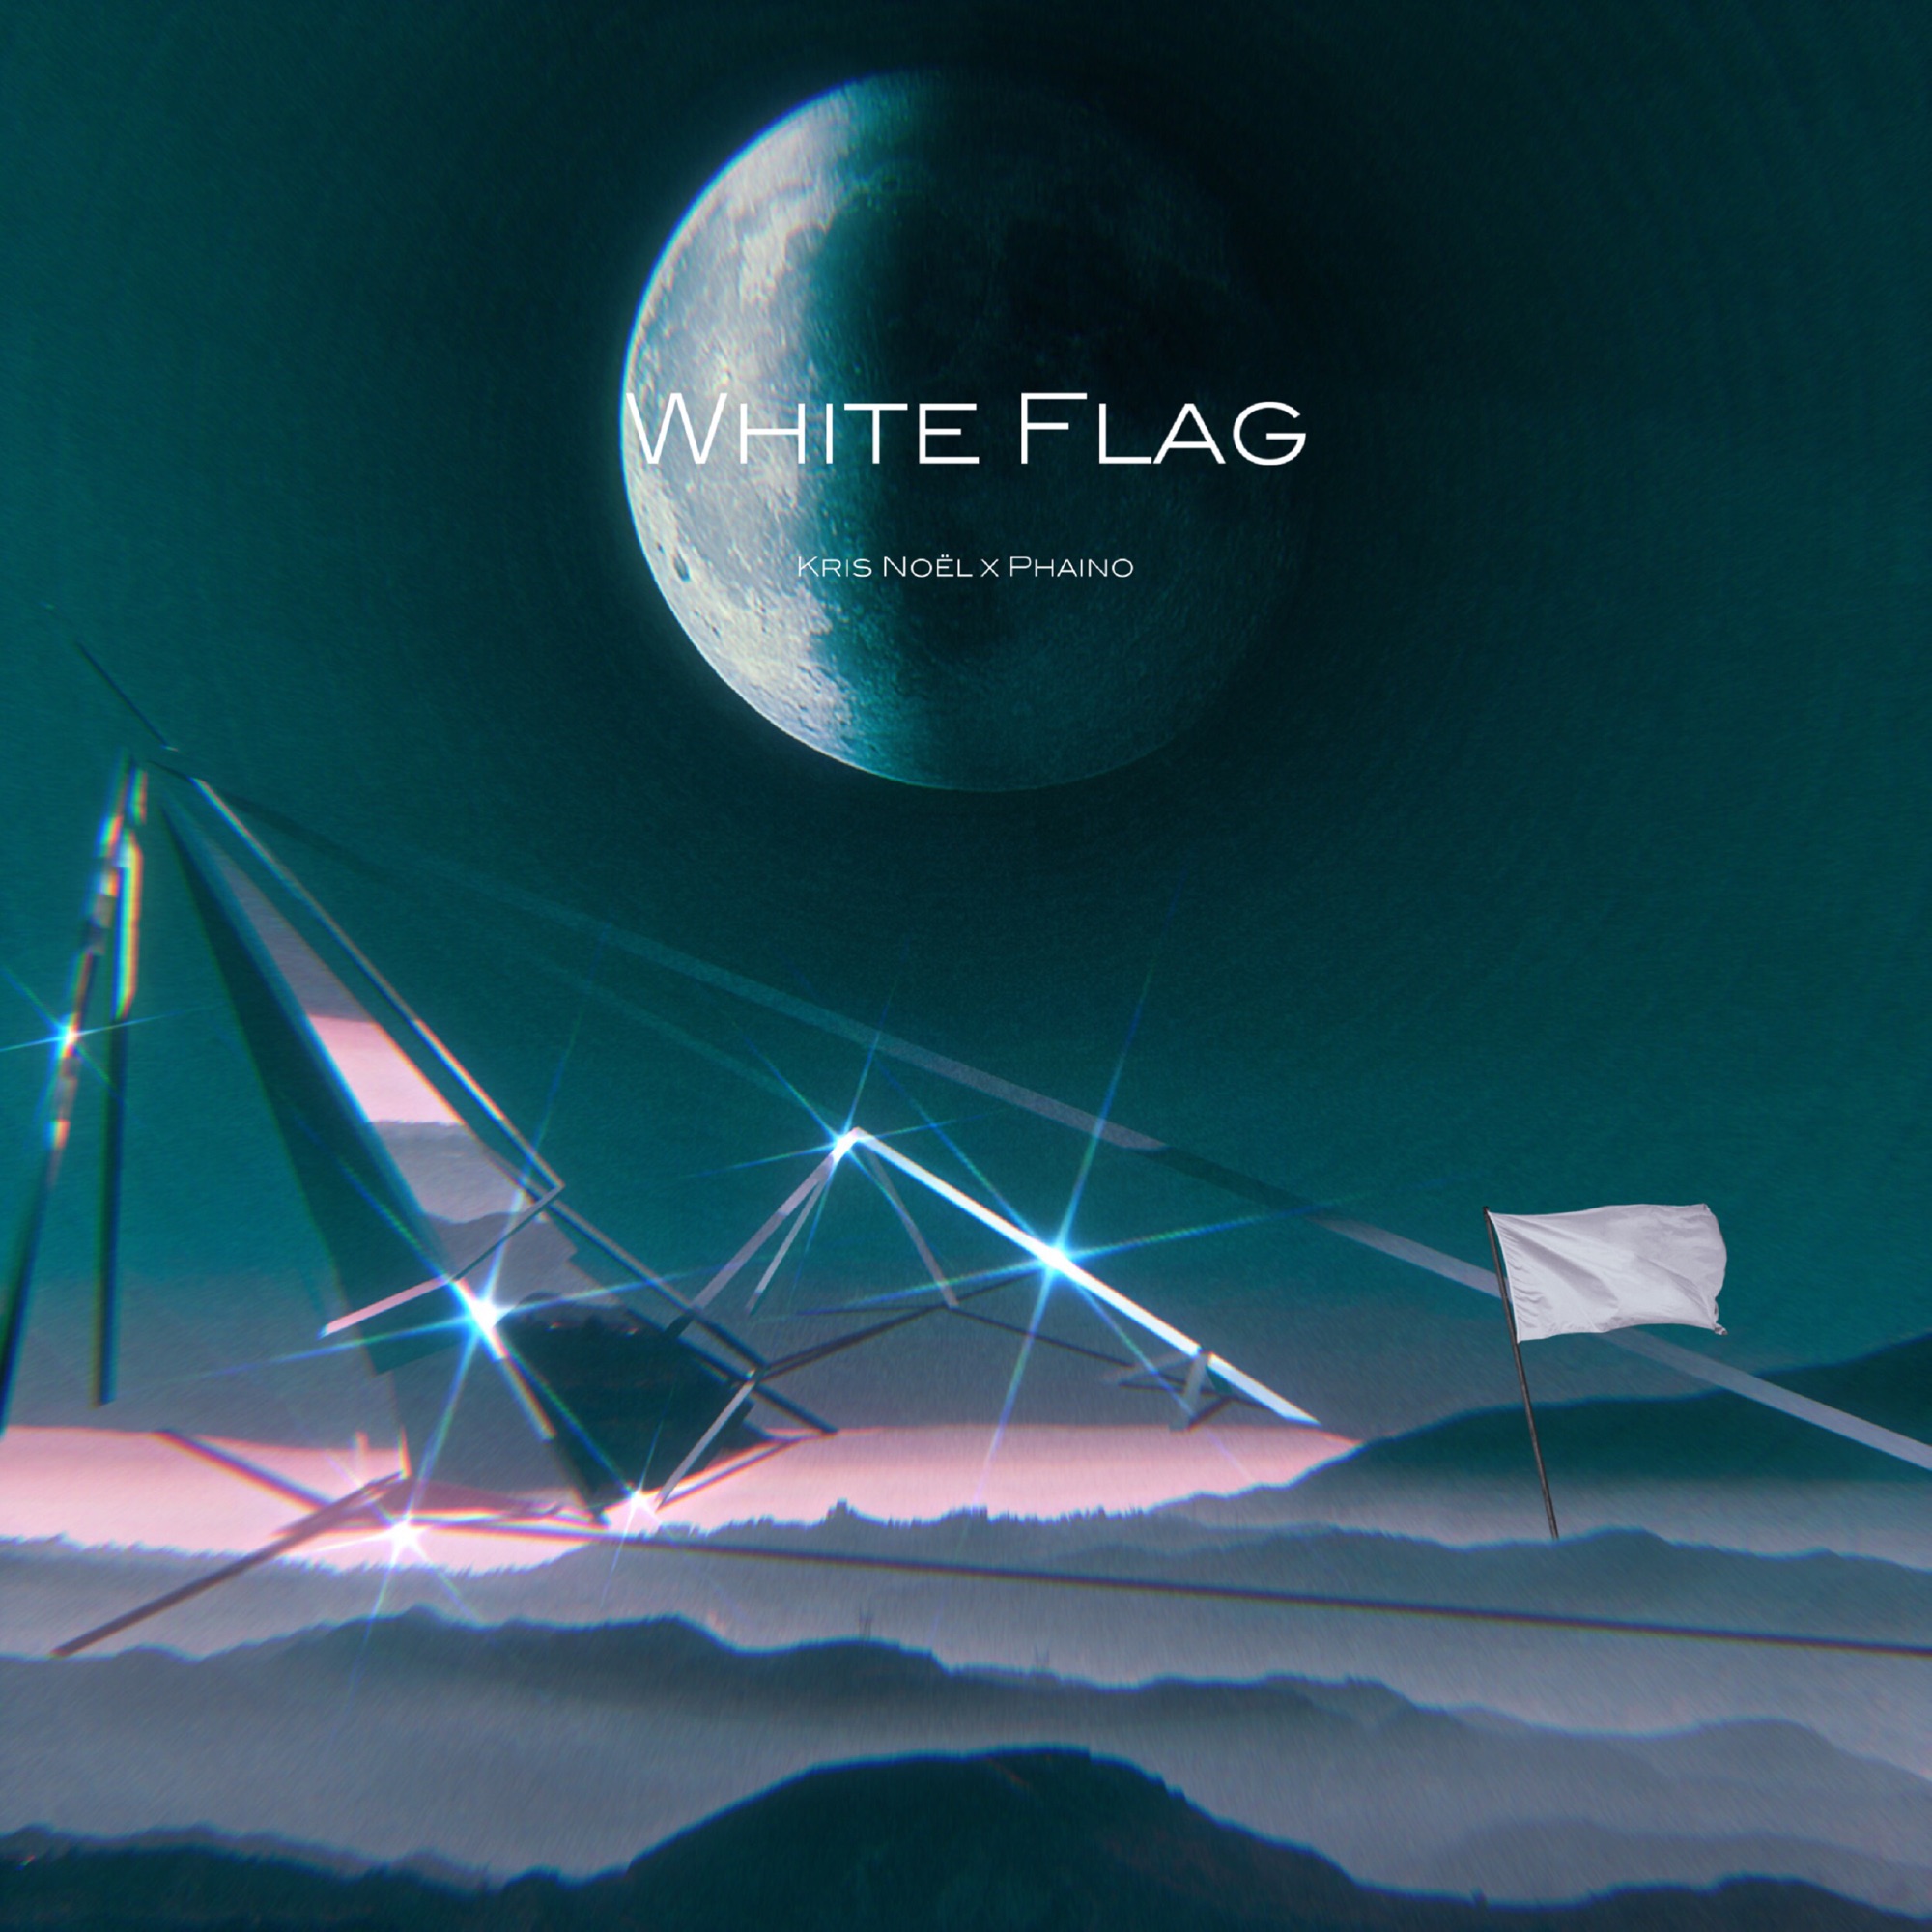 Art for White Flag by Kris Noel x Phaino, Kris Noel & Phaino